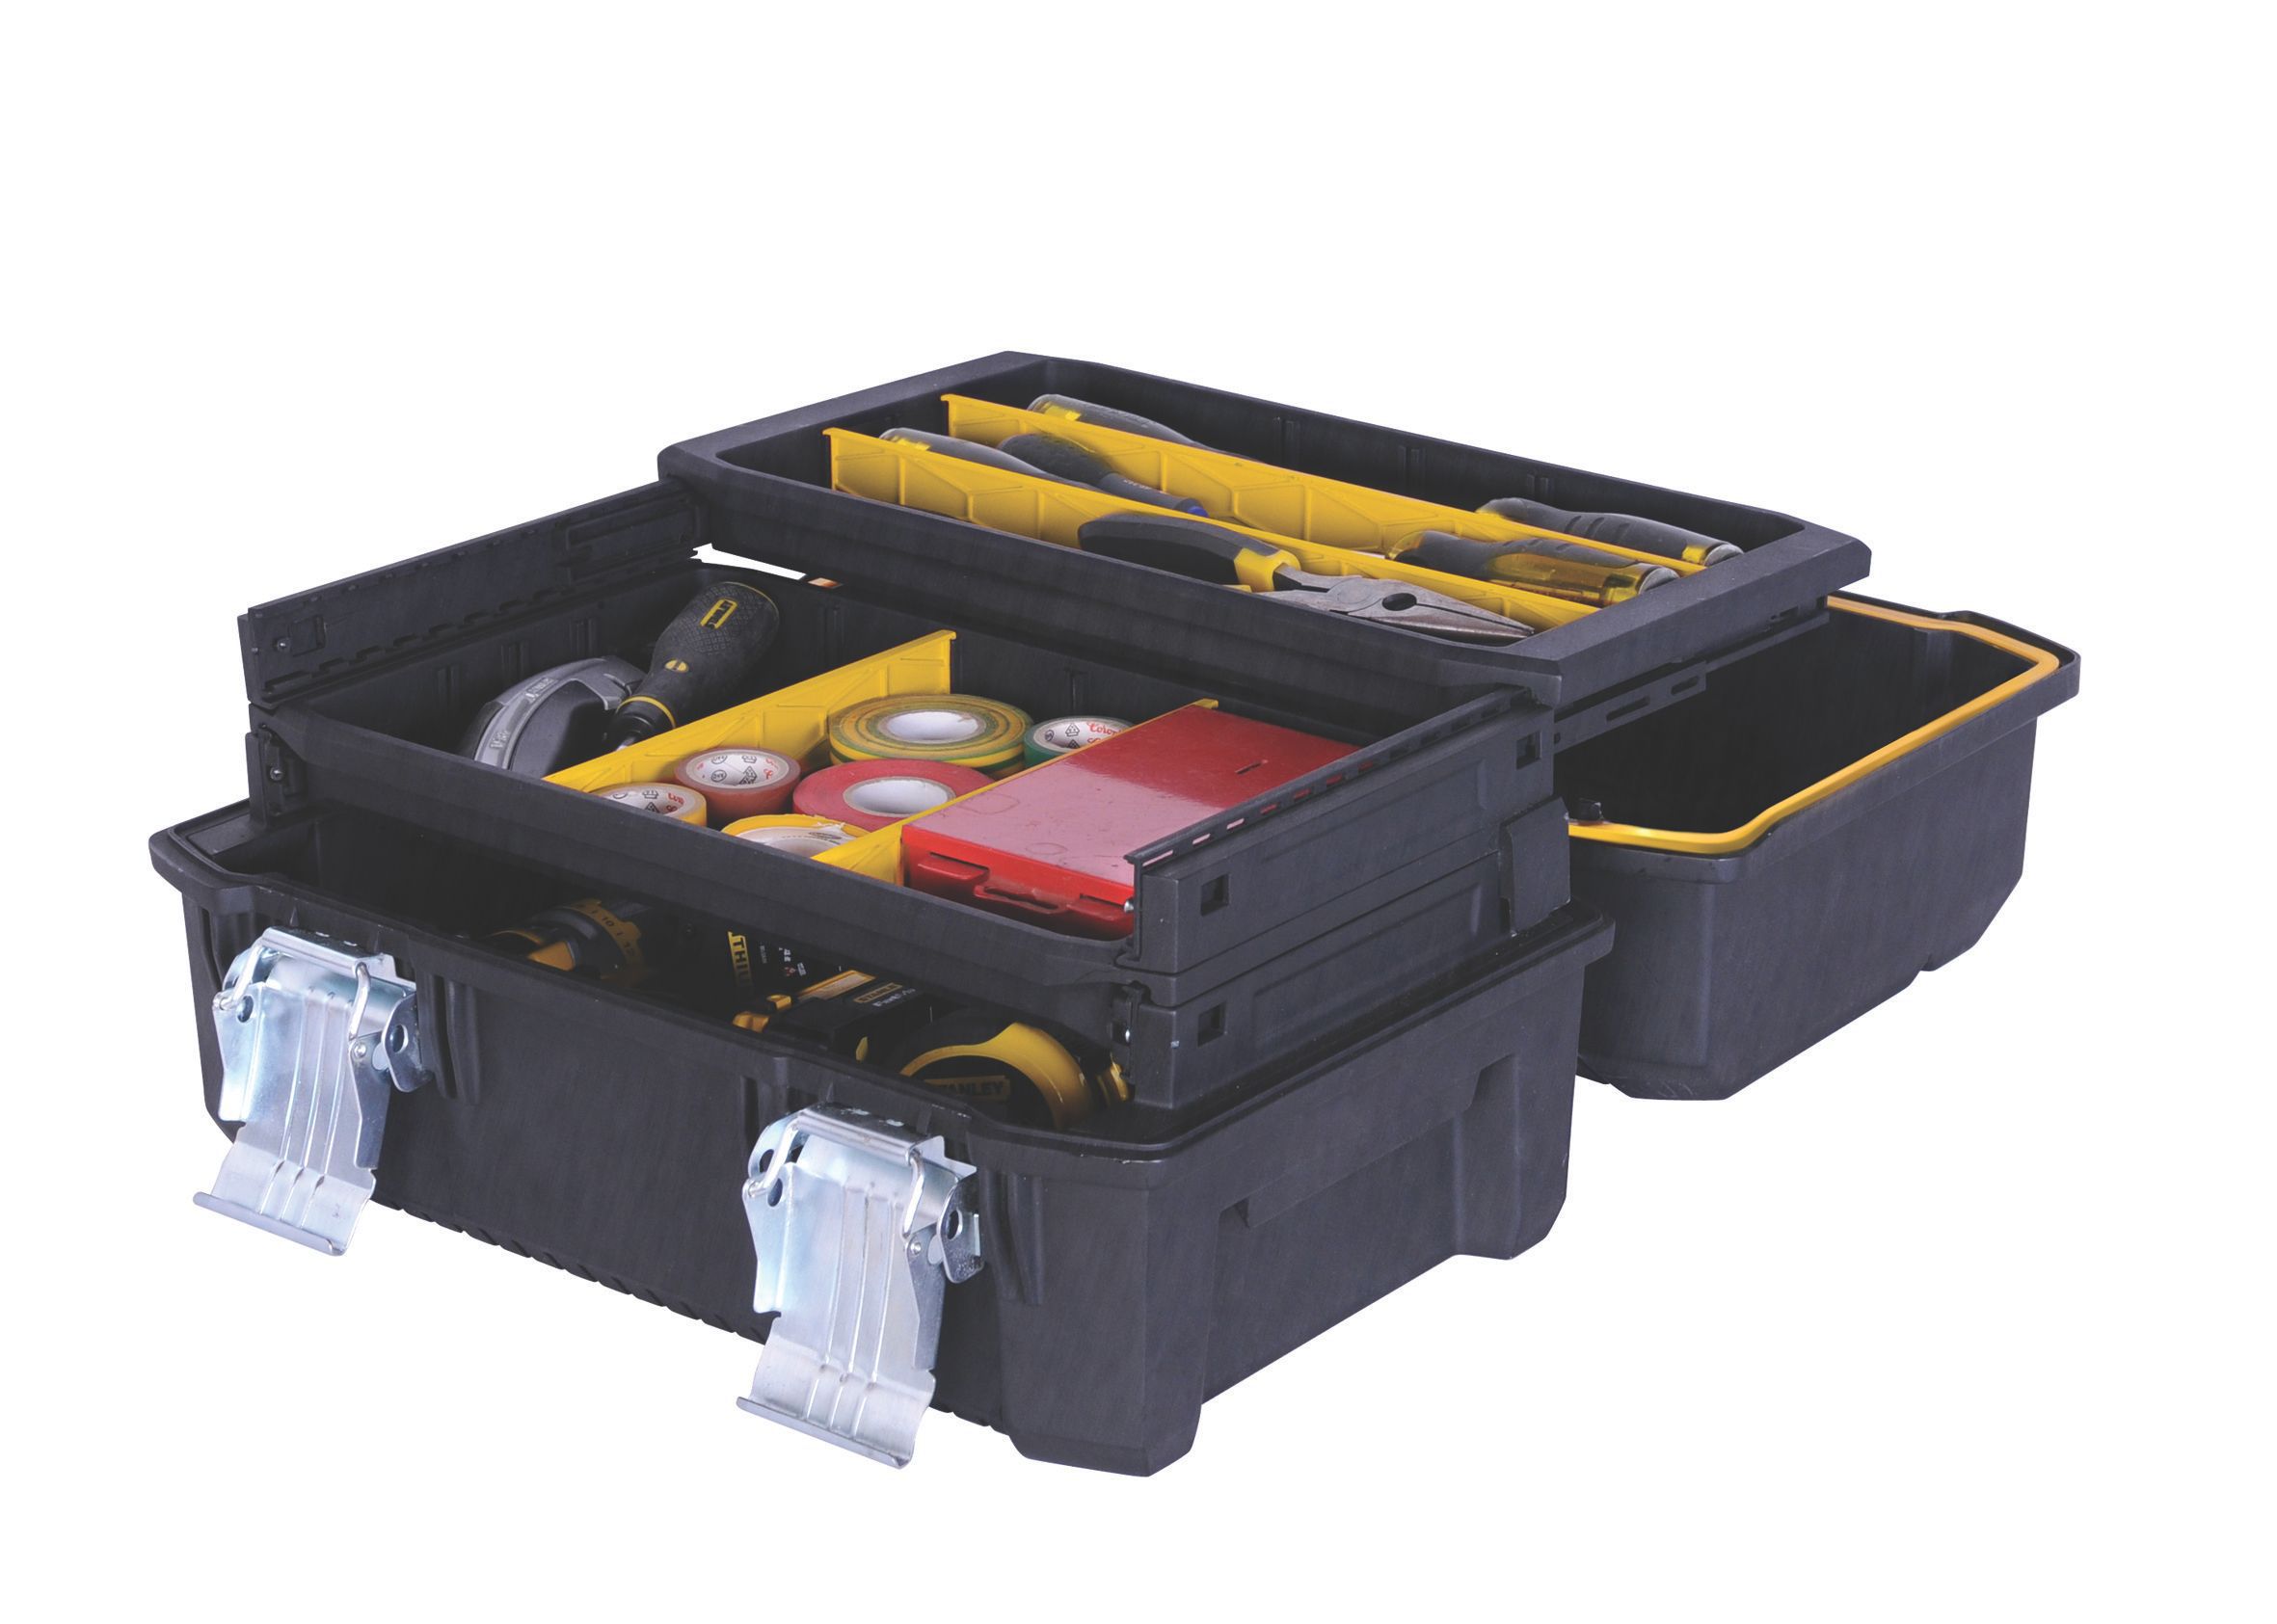 Stanley Polypropylene (PP) Cantilever toolbox (L)457mm (H)240mm